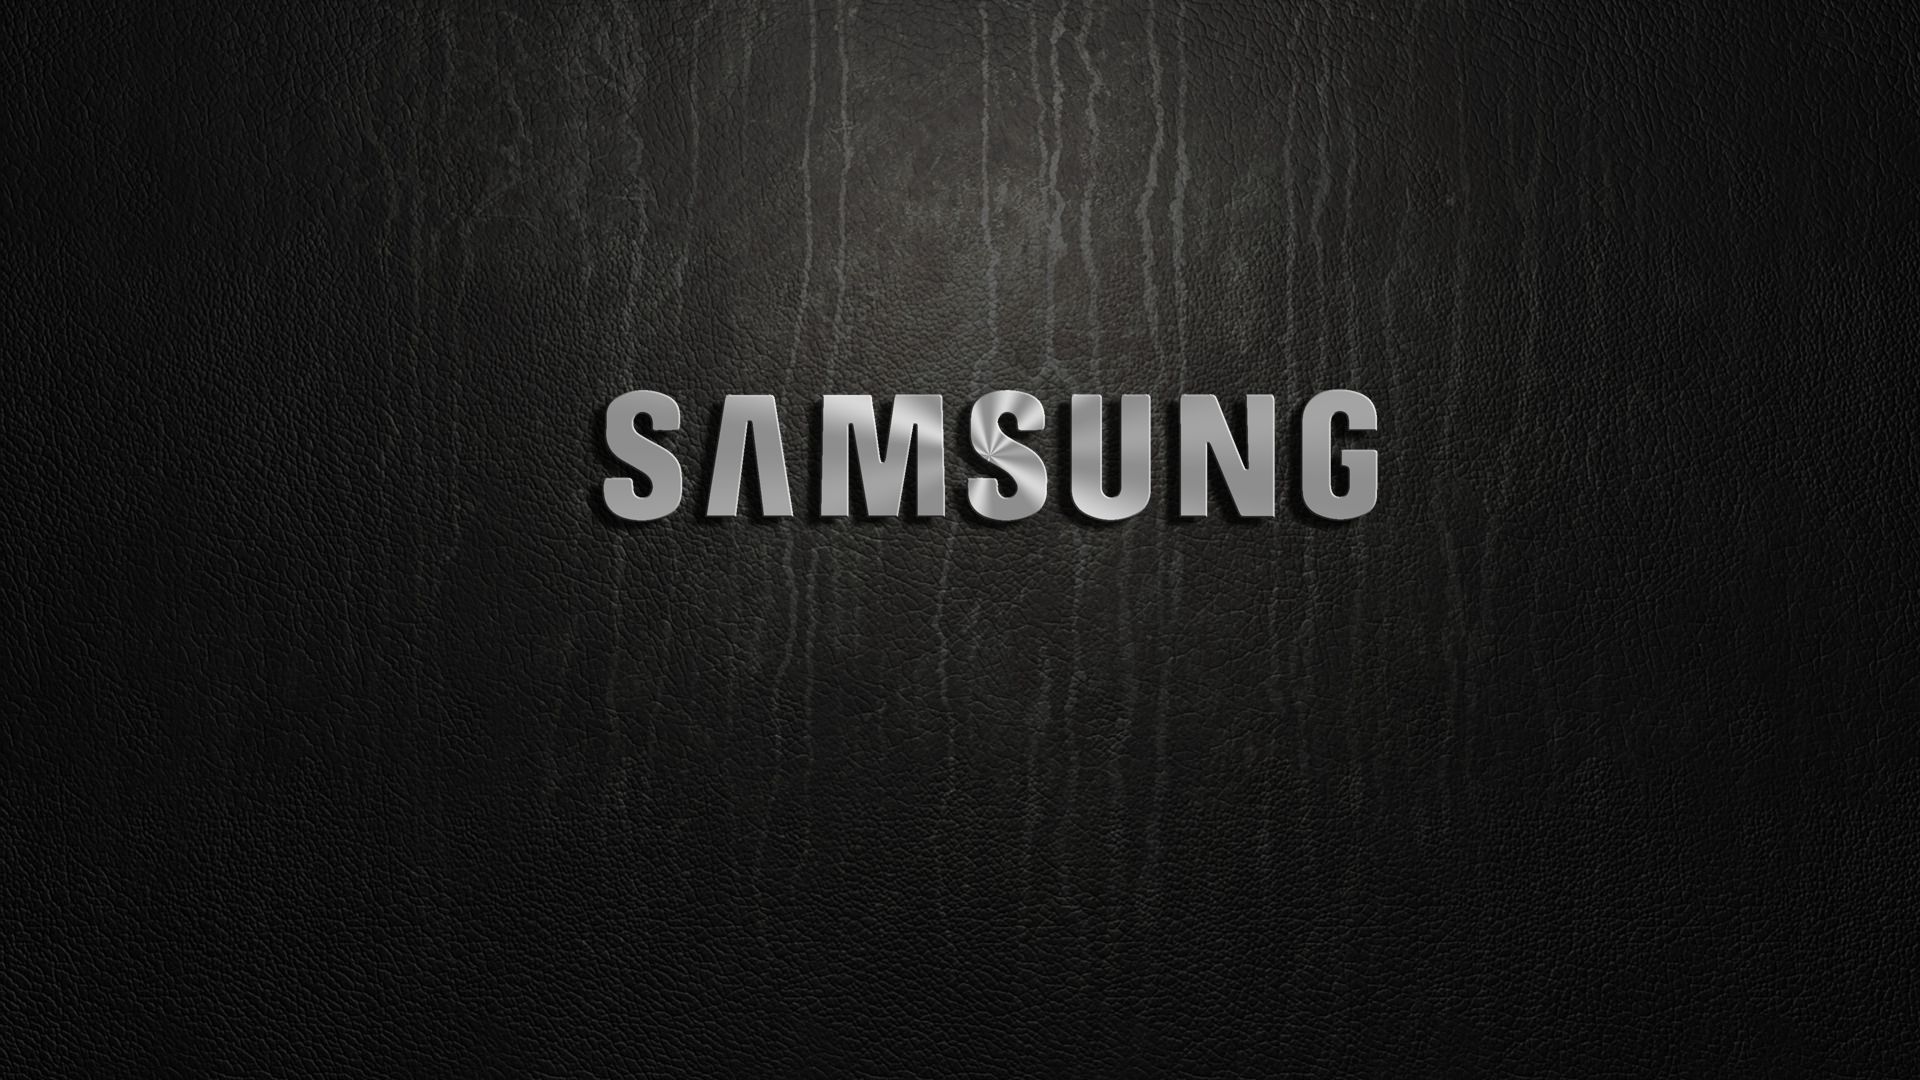 Скачать обои Samsung на телефон бесплатно